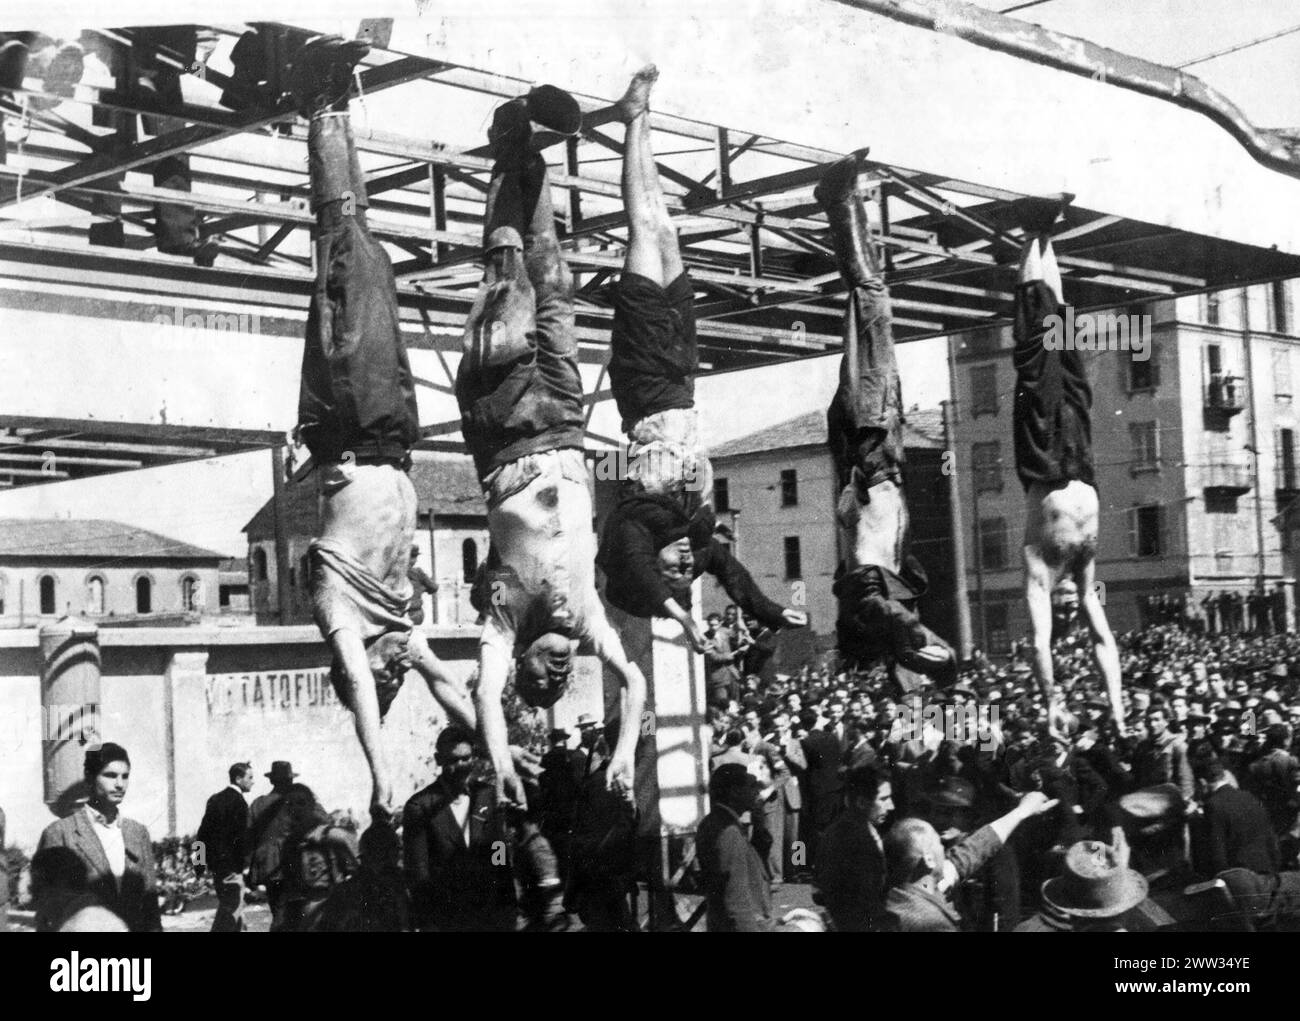 Dictateur exécuté - de gauche à droite, les corps de Bombacci, Mussolini, Petacci, Pavolini et Starace dans Piazzale Loreto, 1945 Banque D'Images